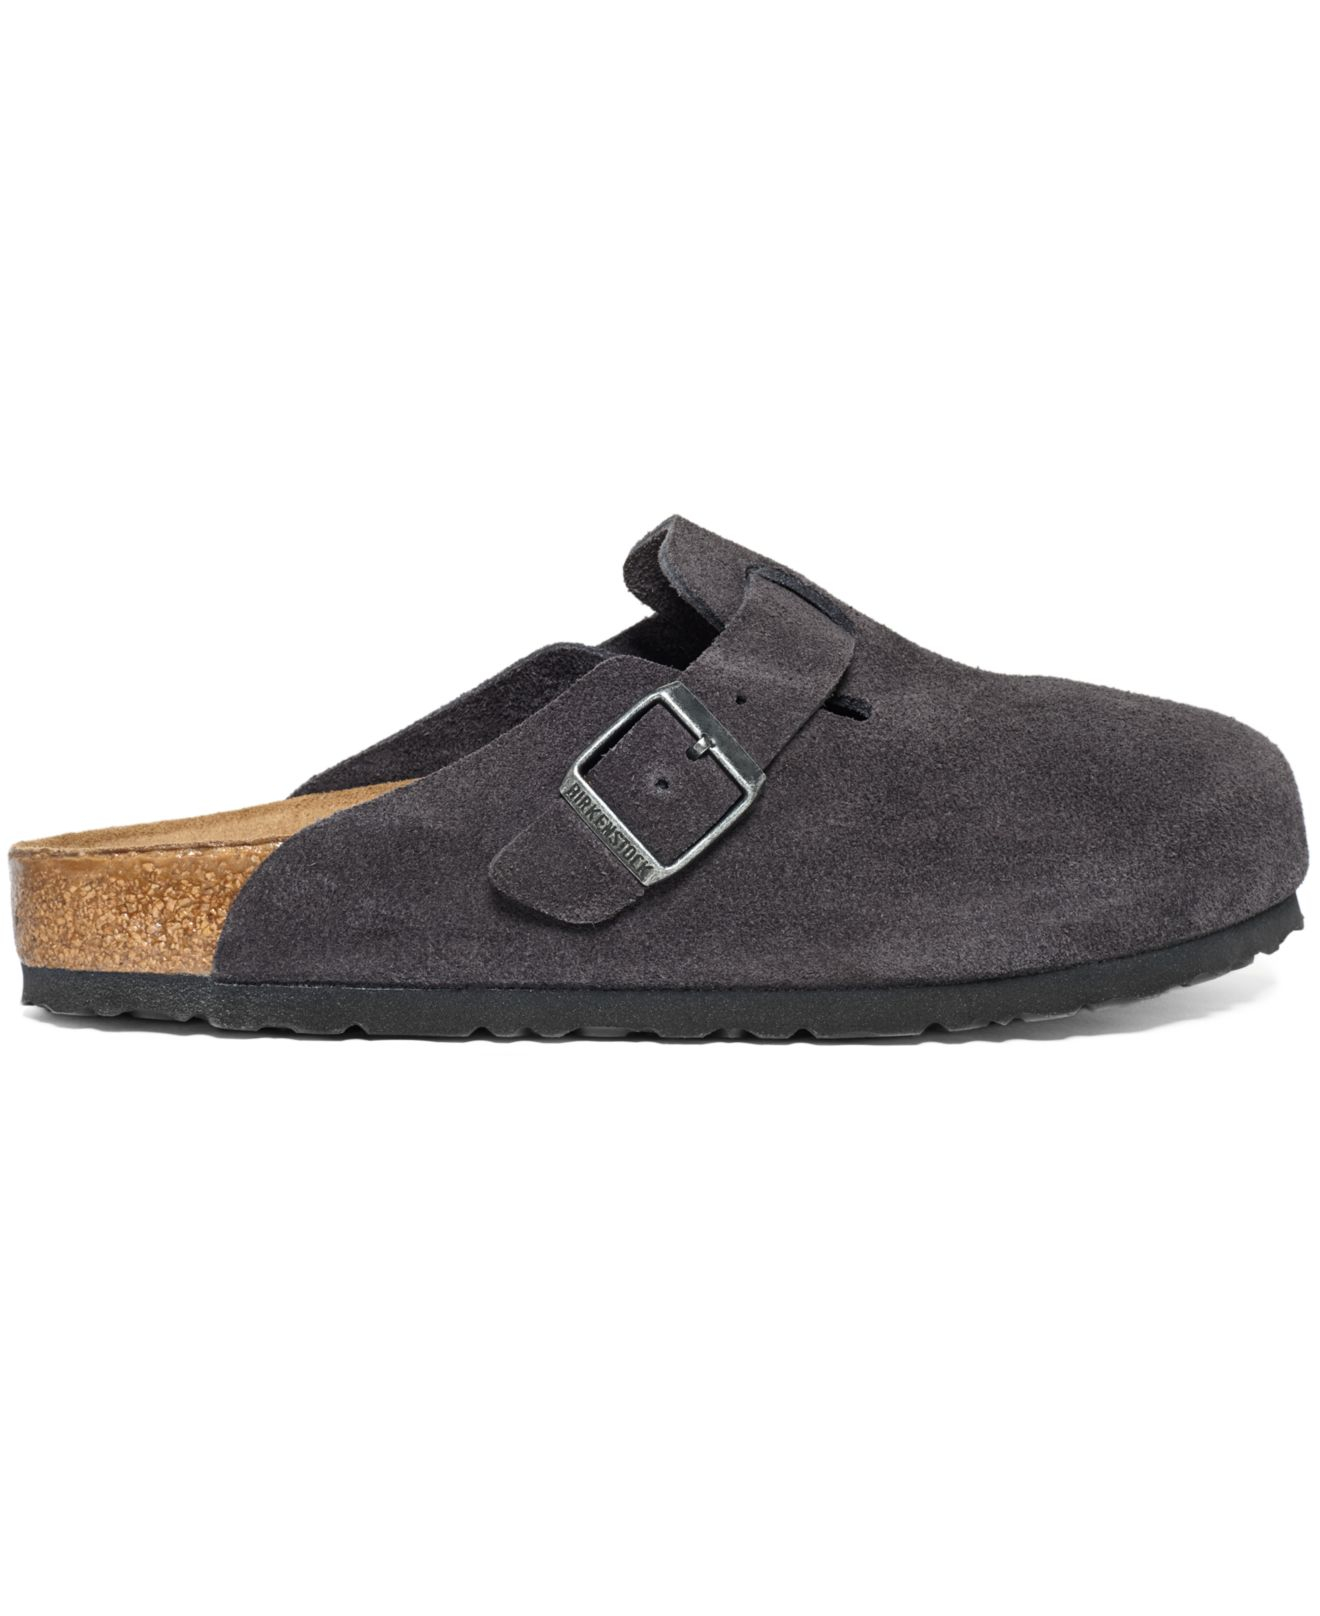 Lyst - Birkenstock Boston Velvet Suede Shoes in Gray for Men